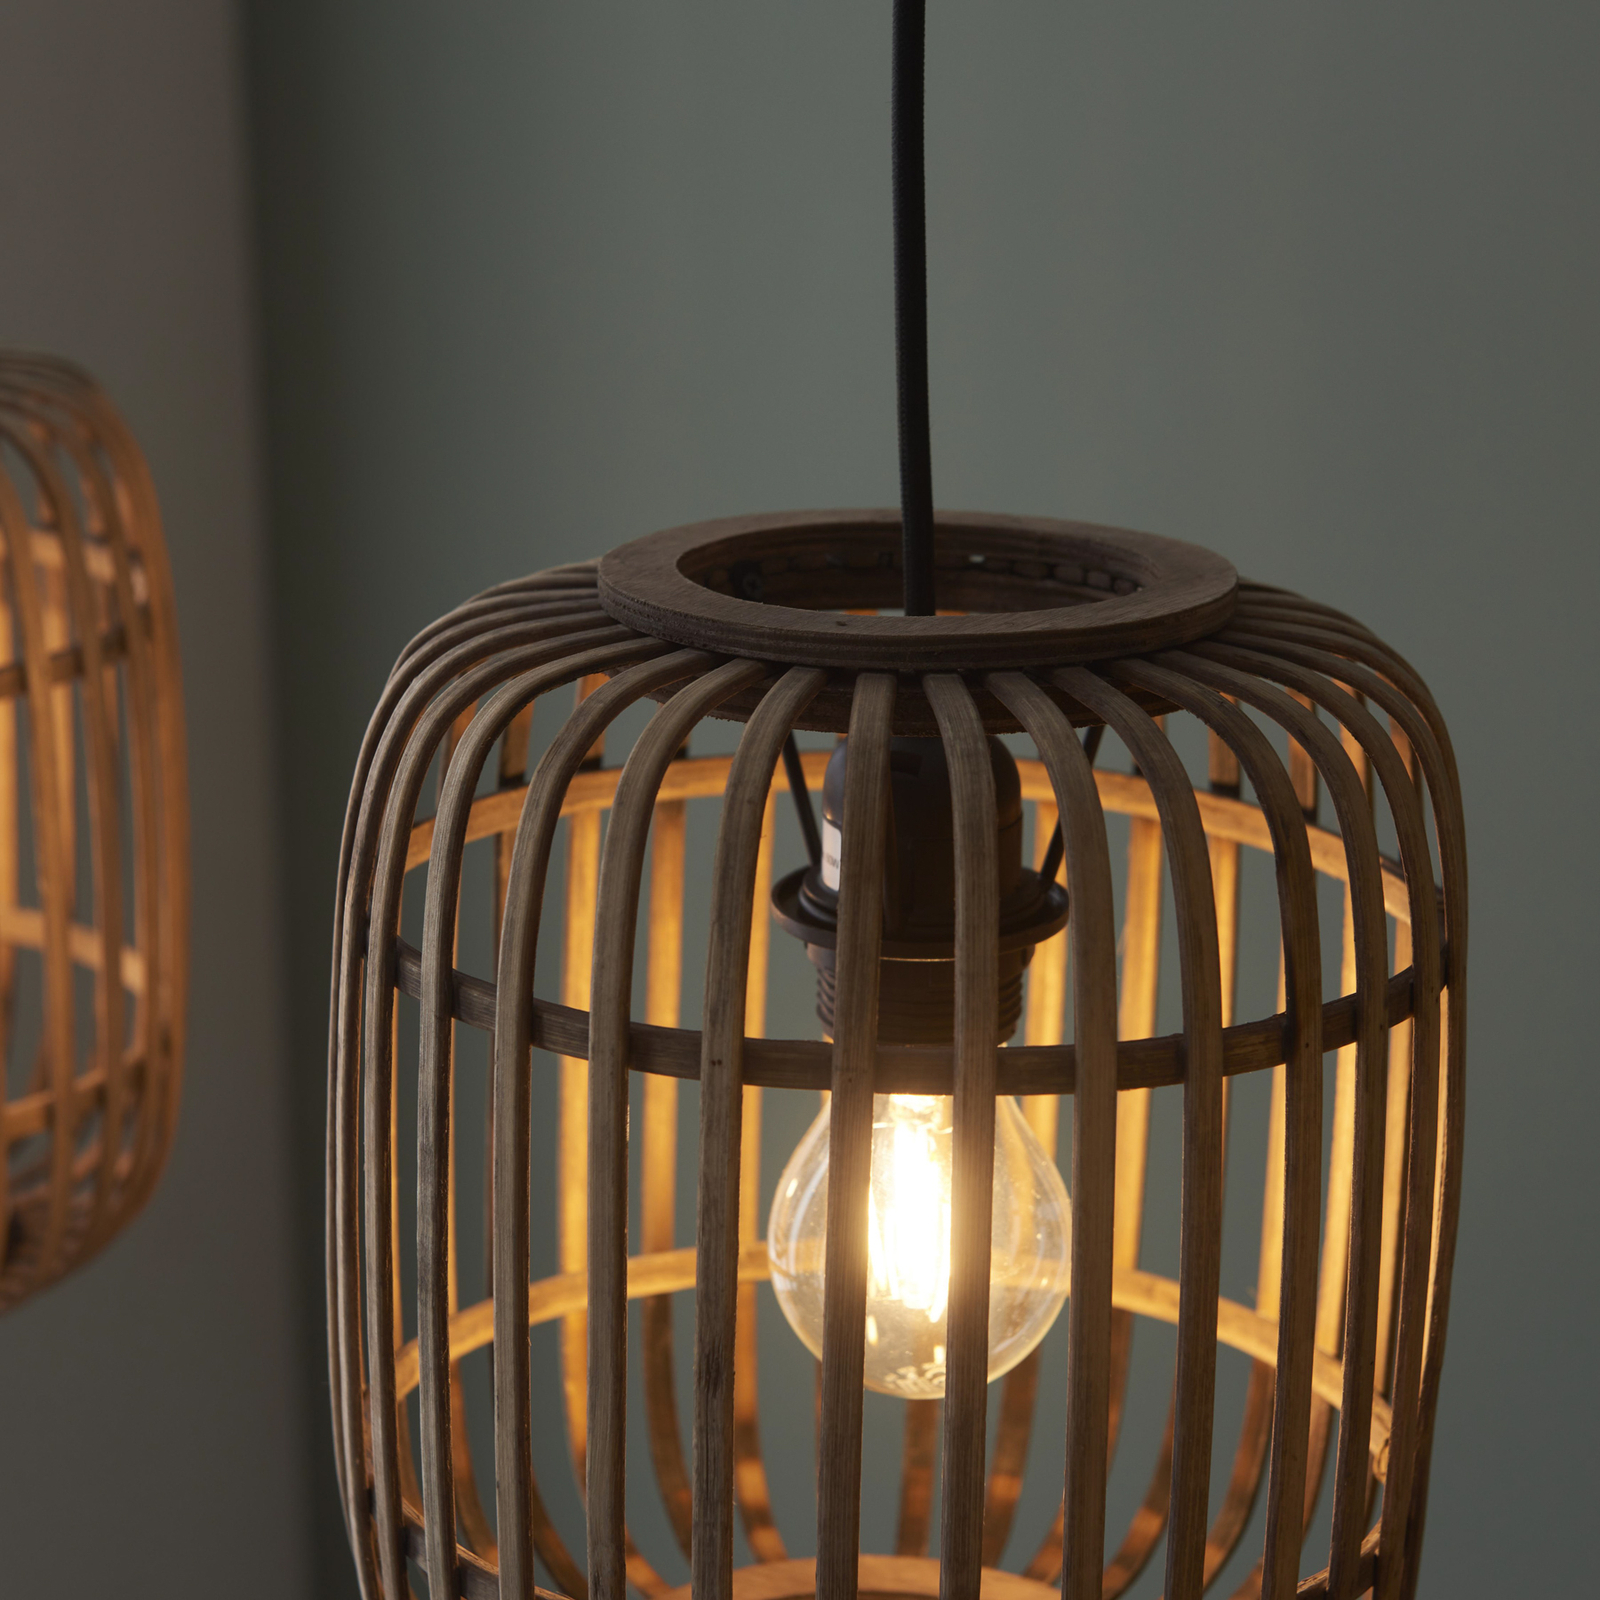 Závěsná lampa Woodrow, délka 105 cm, světlé dřevo, 3 světla, bambus